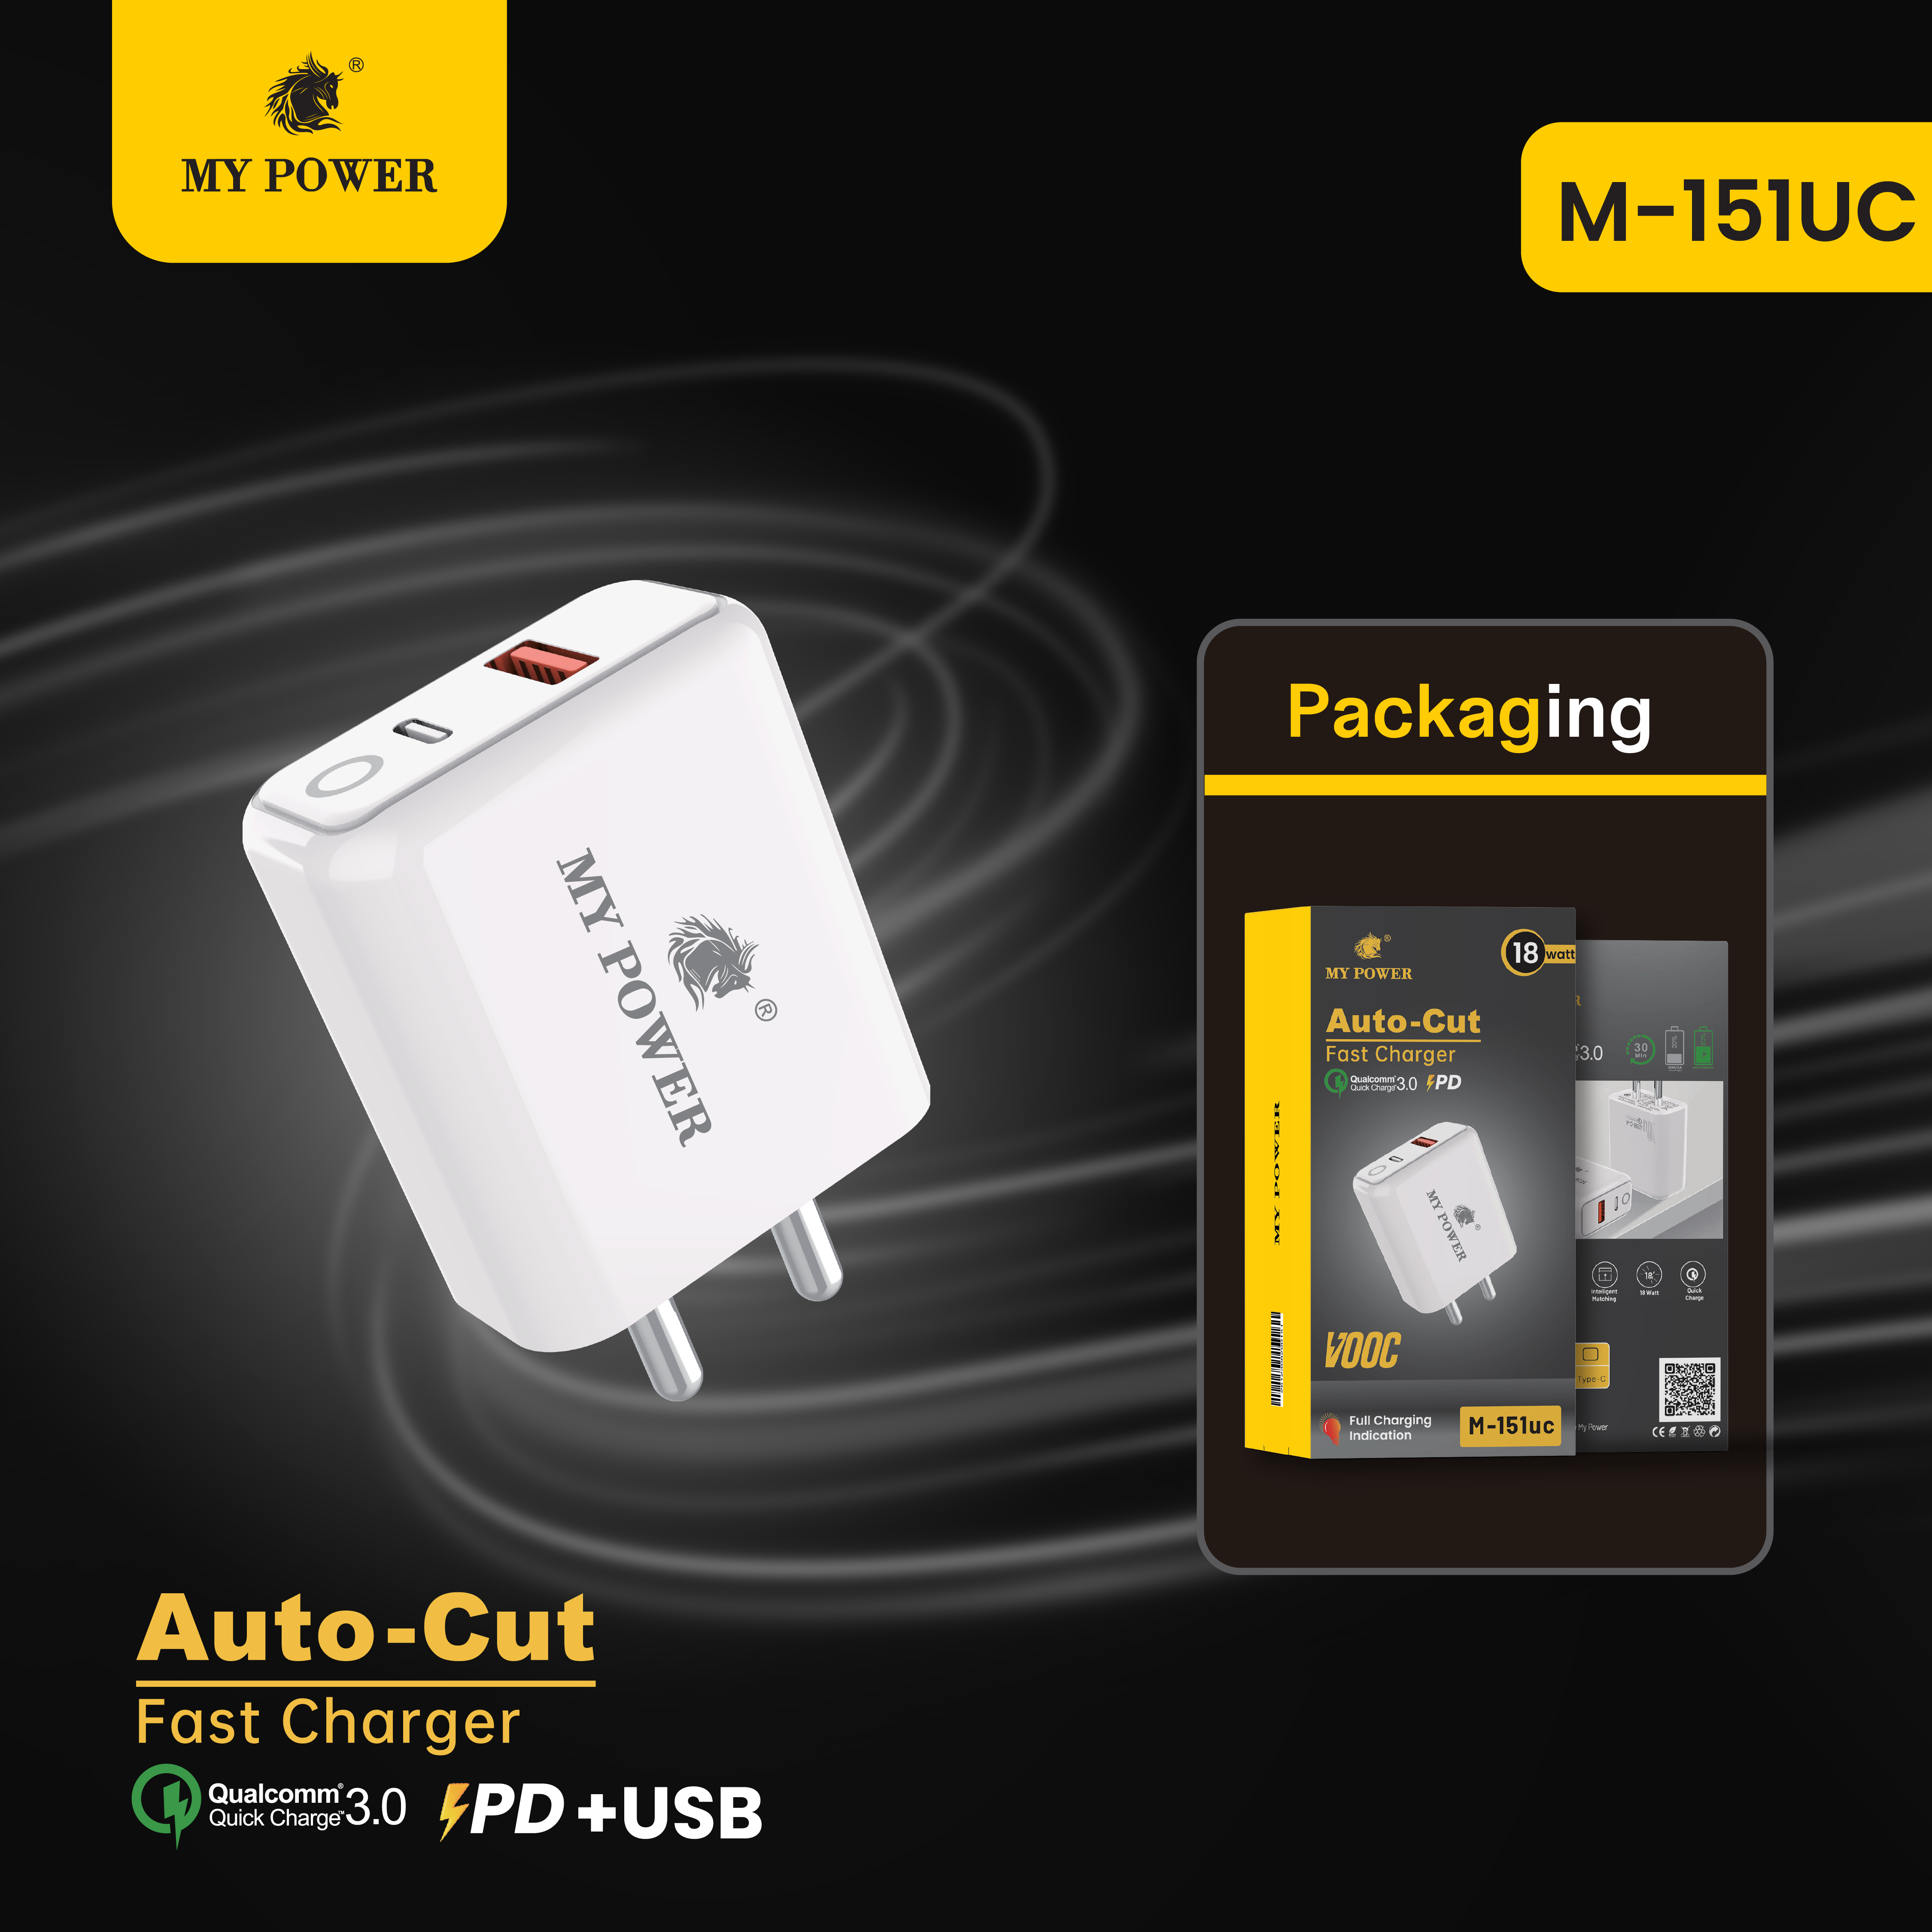 M-151uc_packaging-01